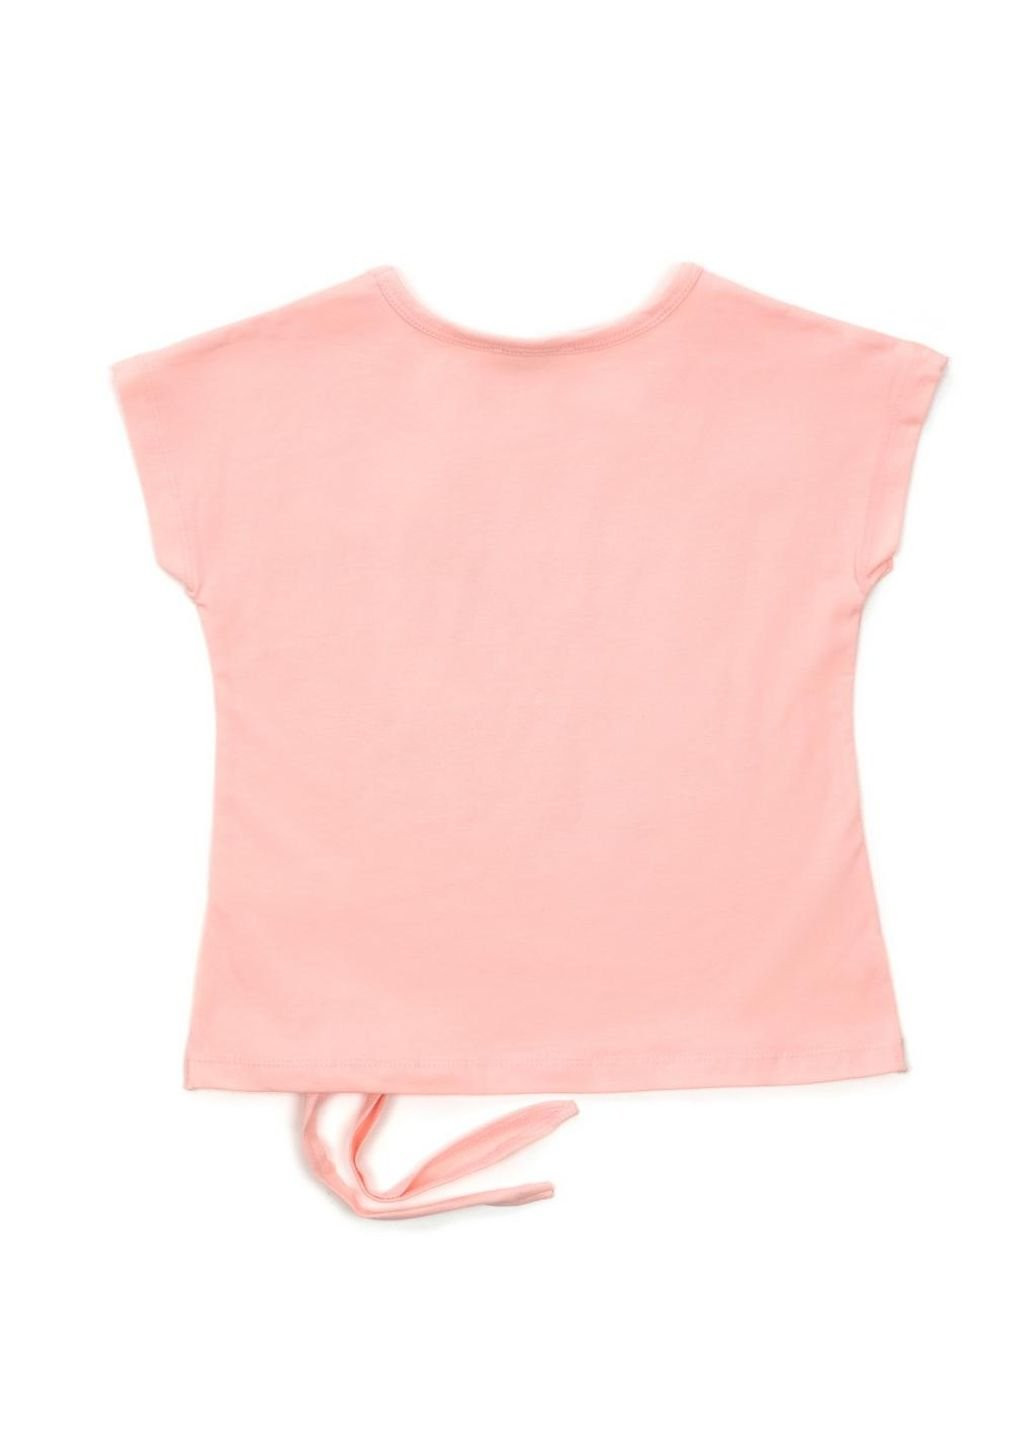 Персиковая летняя футболка детская "street style" (14309-116g-peach) Breeze